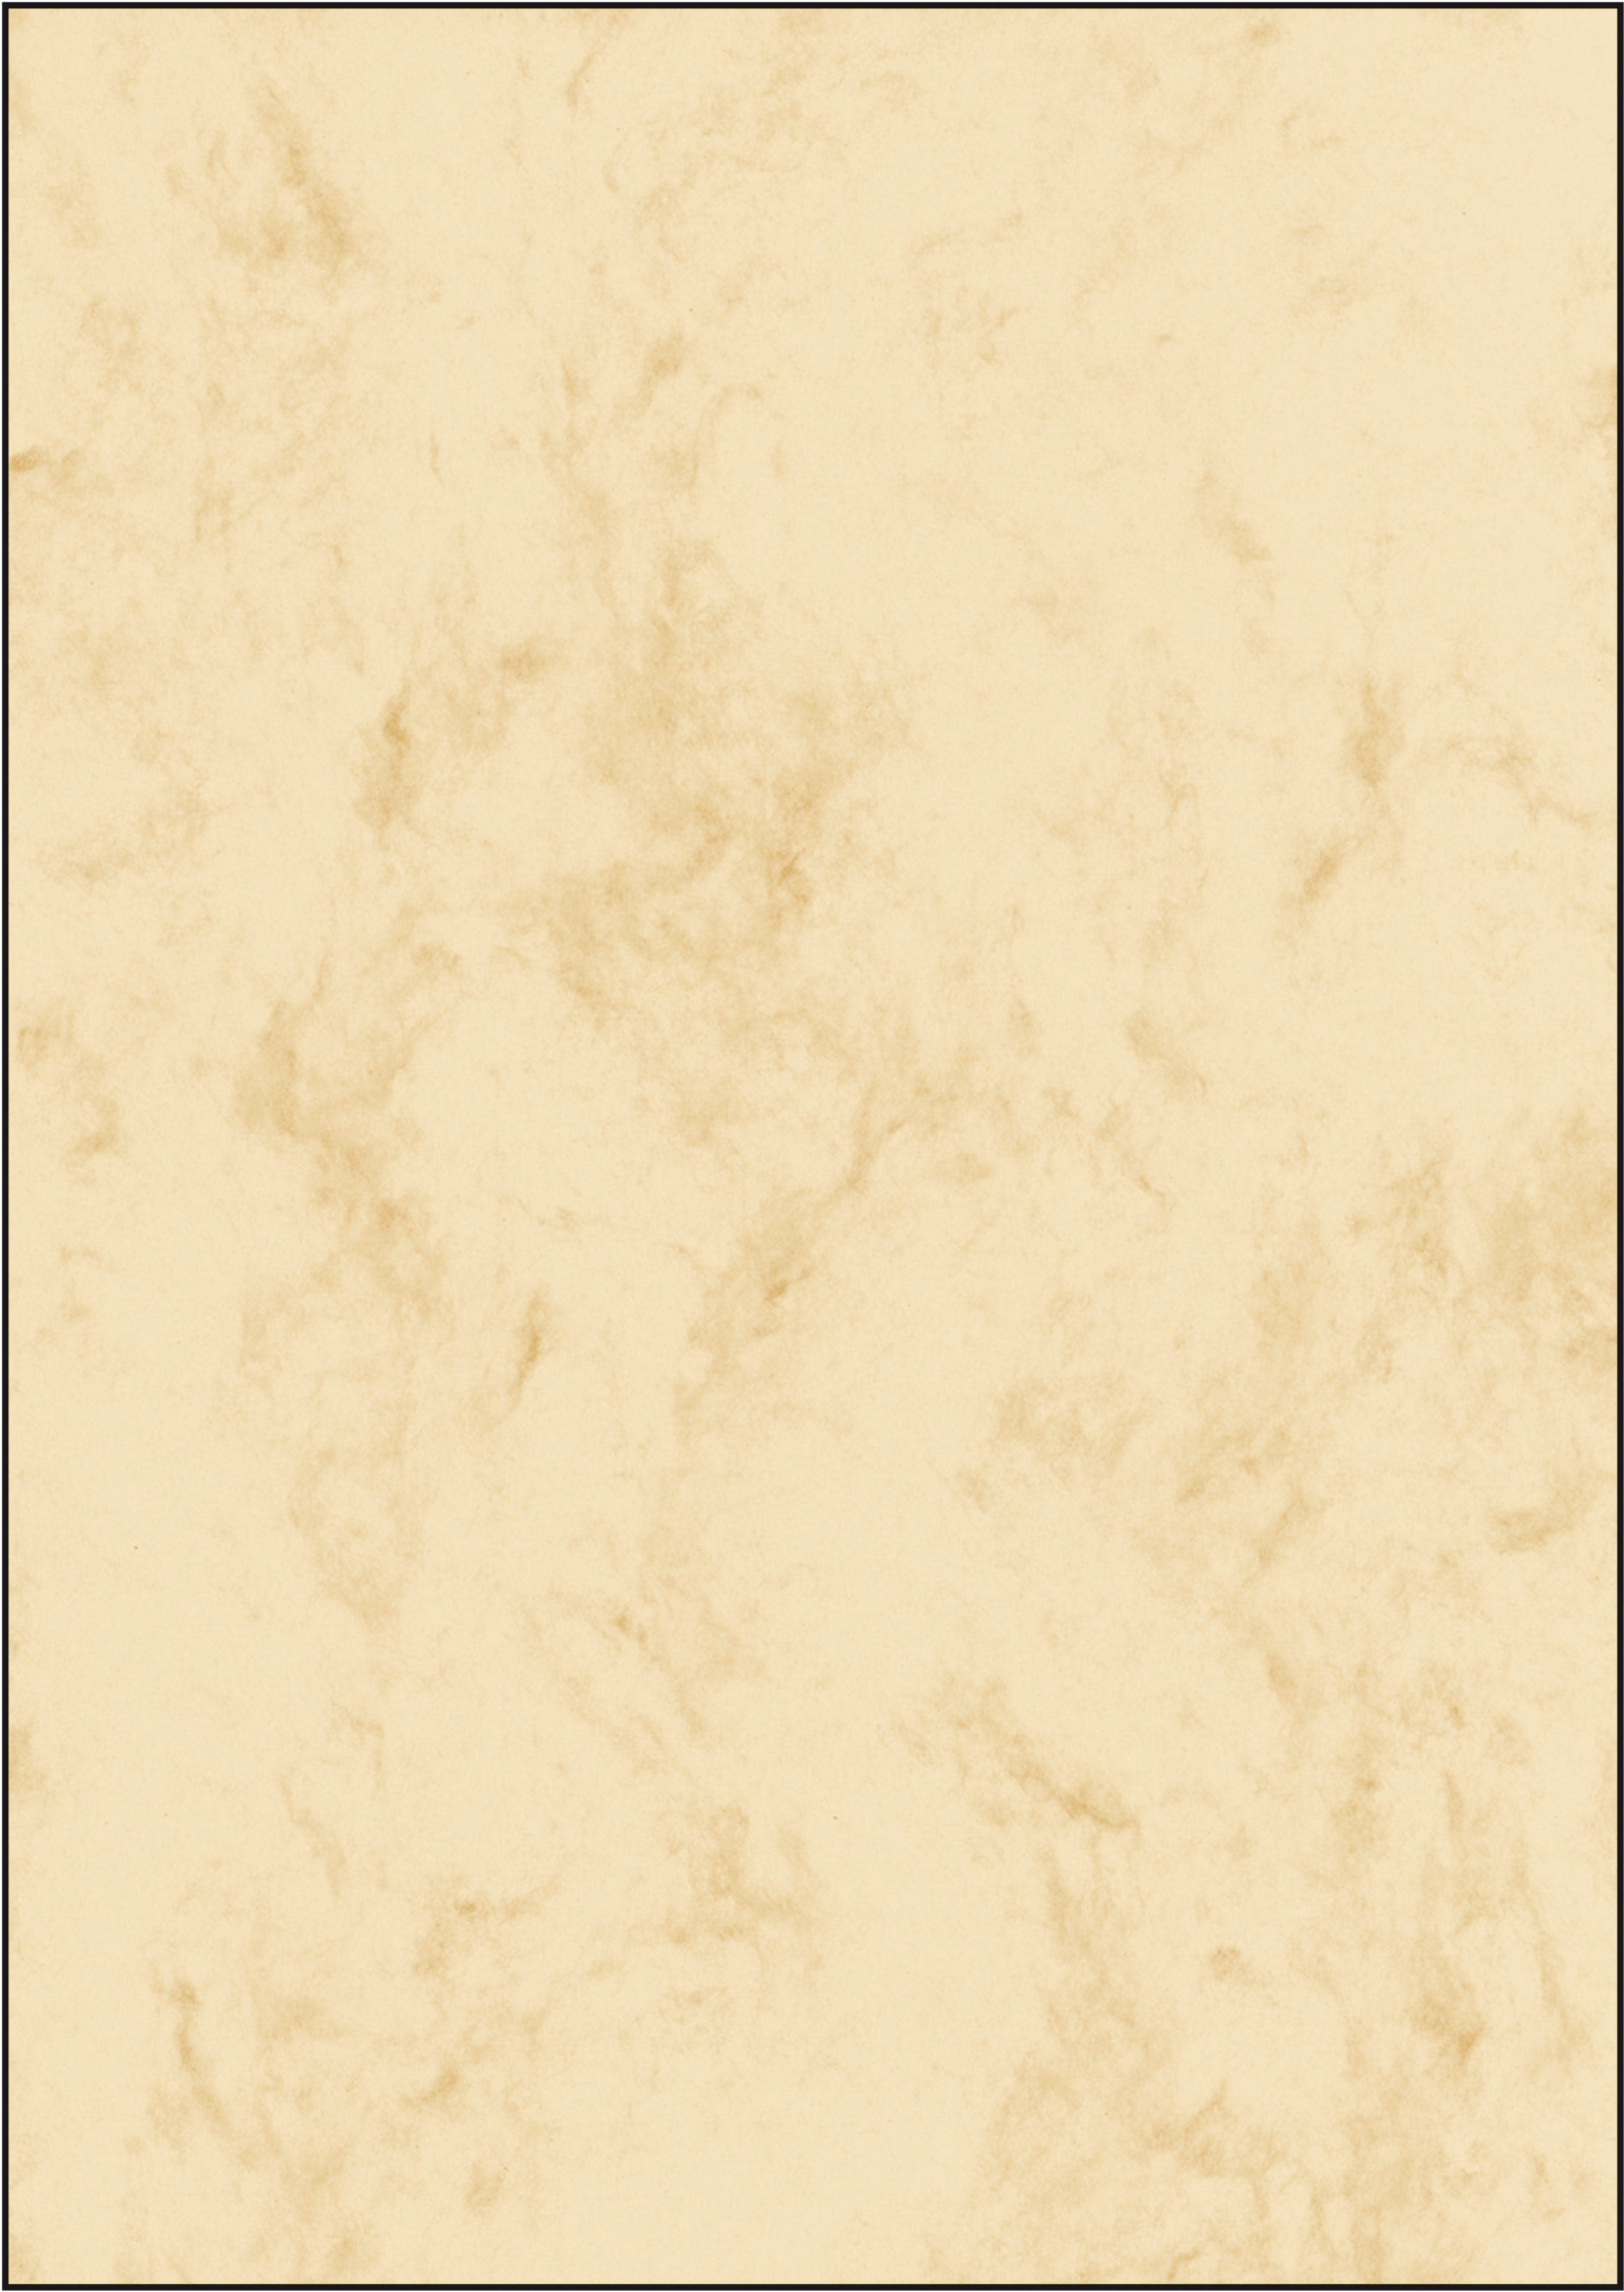 SIGEL Papier Design A4 DP397 200g, marbre 50 flls. 200g, marbre 50 flls.